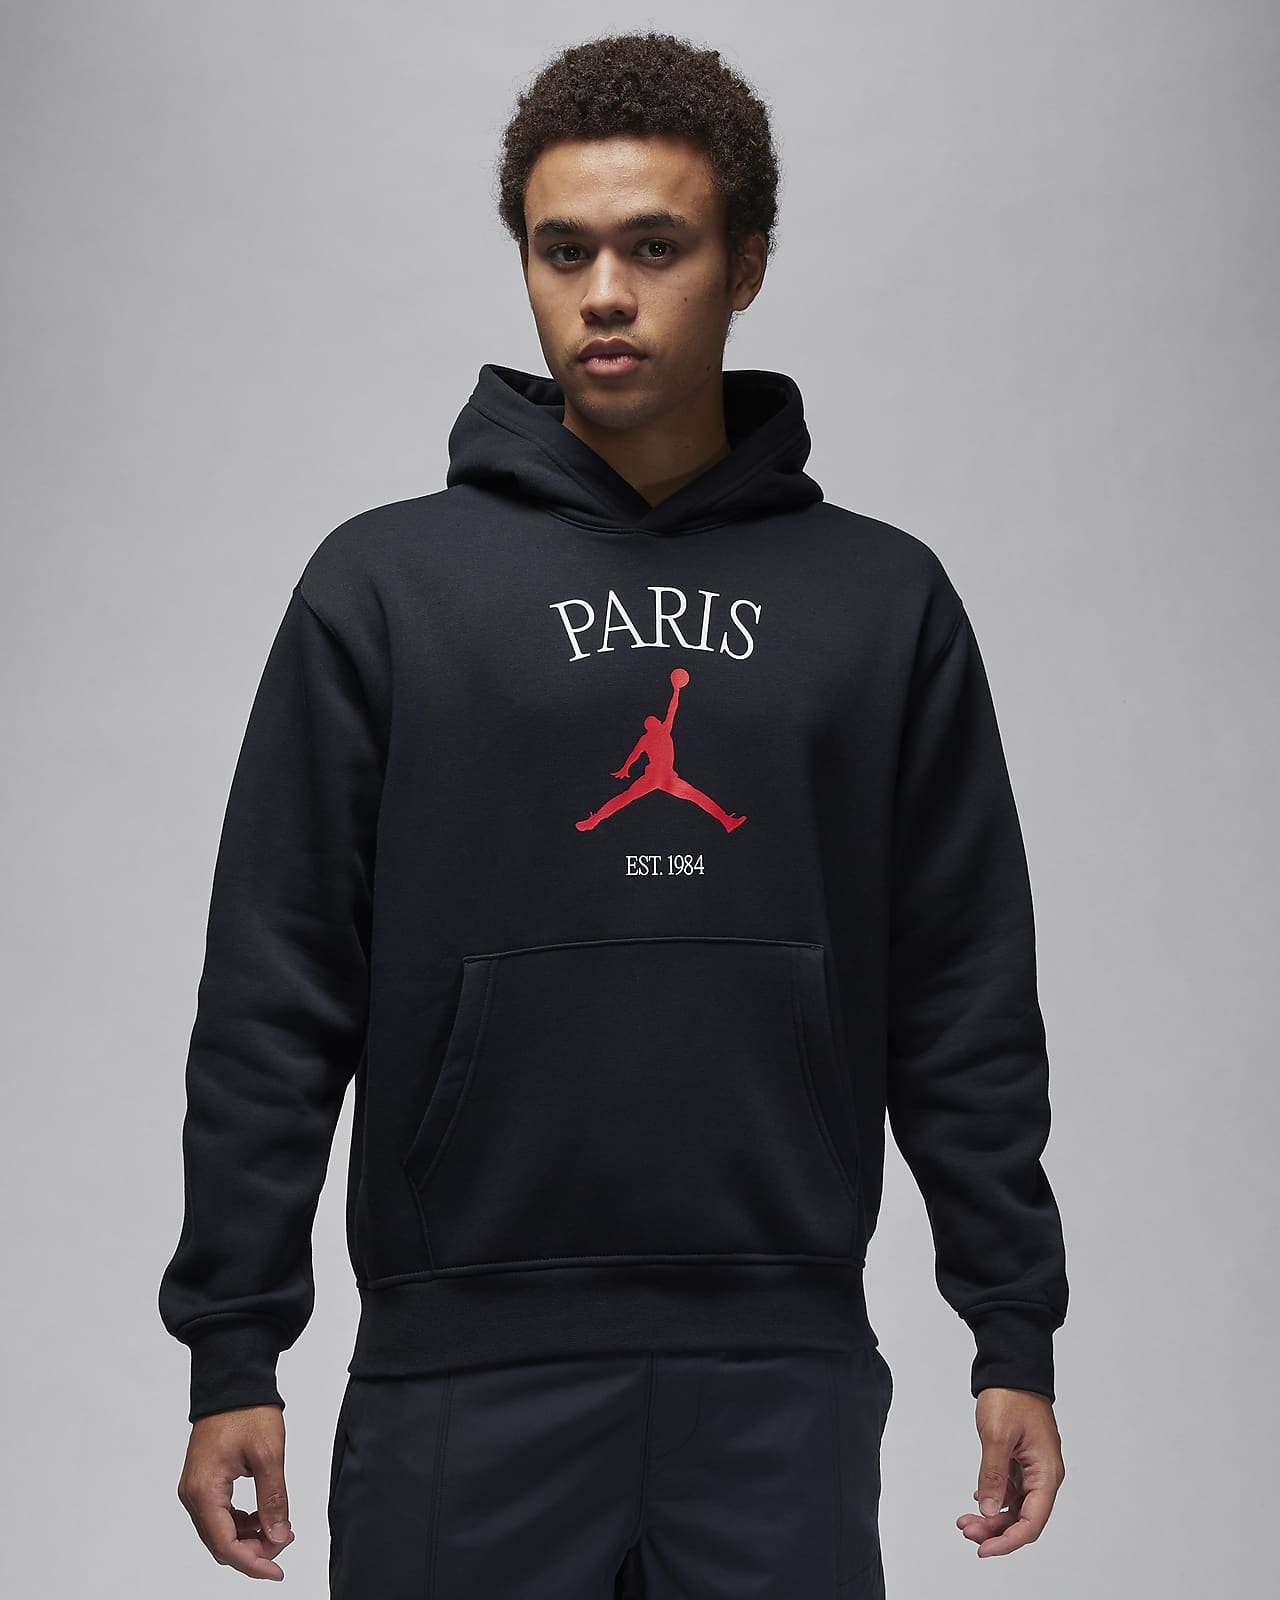 Sudadera Jordan Nike con capucha Hombre